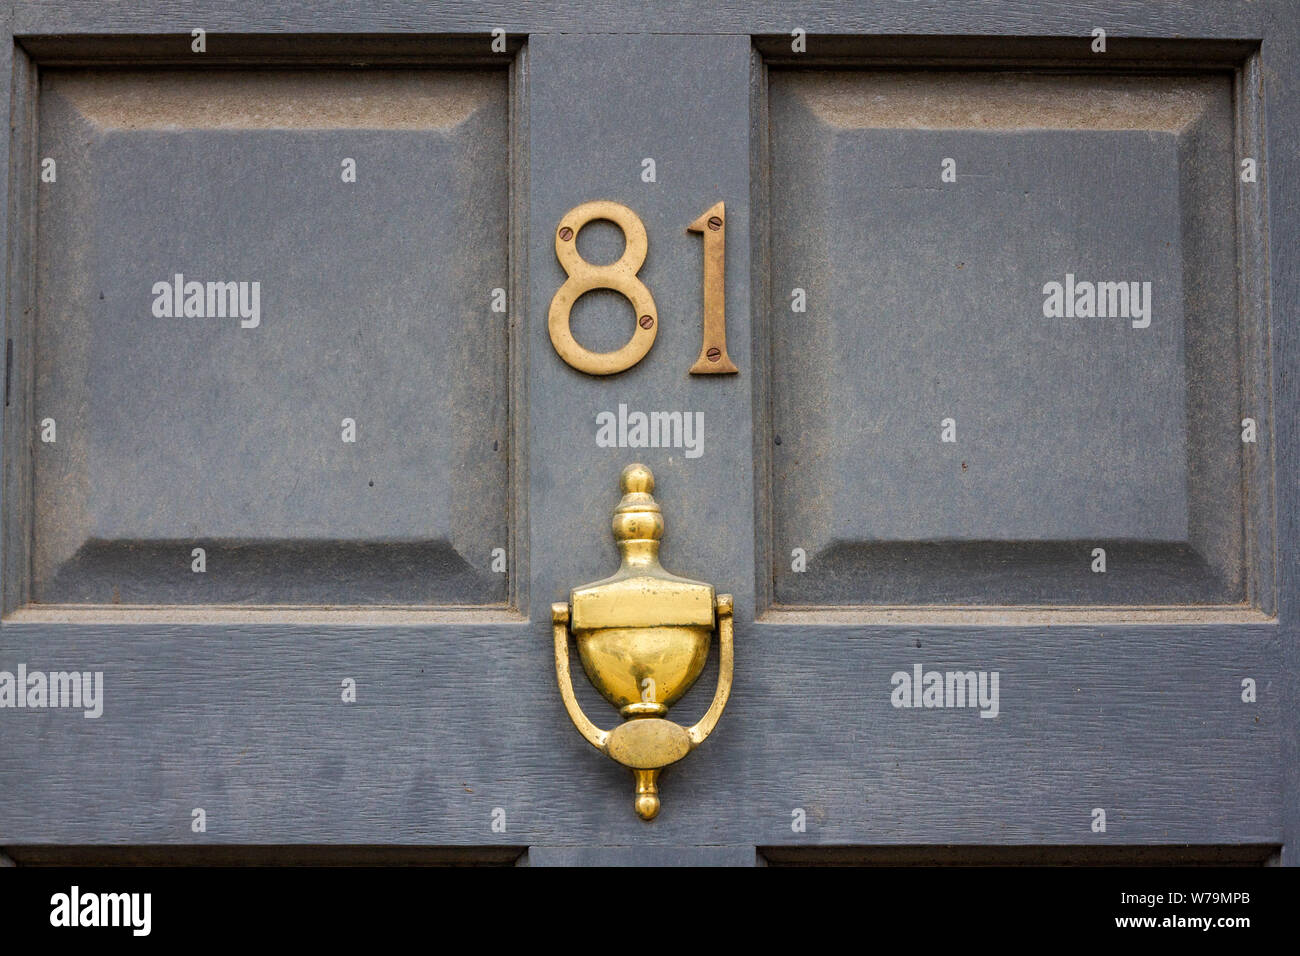 House number 81 with golden door knocker Stock Photo